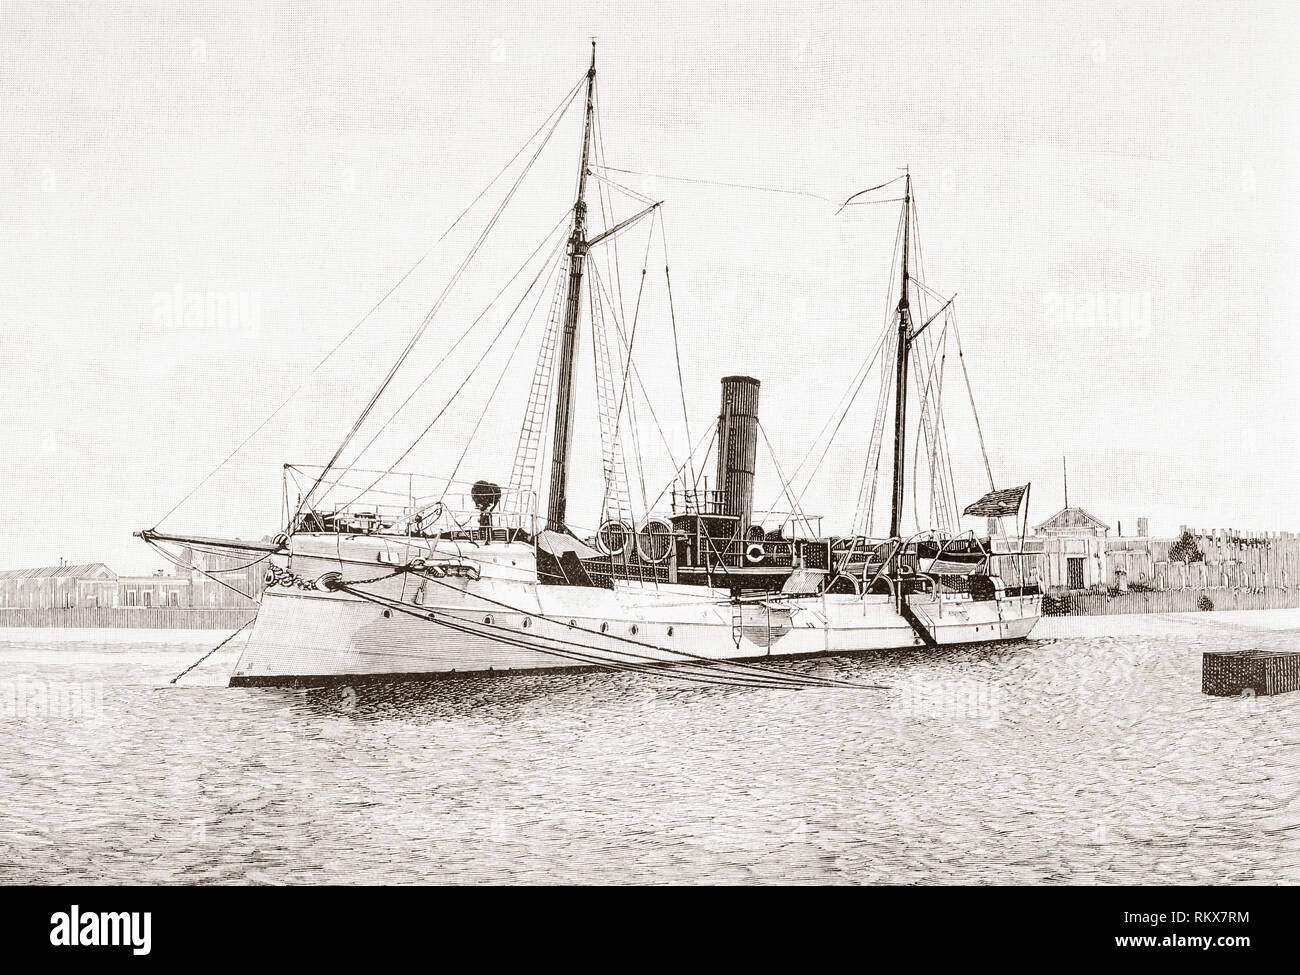 Das torpedoboot neue Spanien, (Nueva Espana), ein temeraire-Klasse Schiff der Linie, die zu der Spanischen Armada. Von La Espanola Ilustracion y Americana, veröffentlicht 1892. Stockfoto